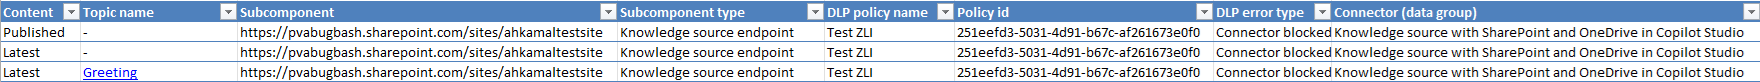 Captura de tela de um arquivo Excel baixado mostrando detalhes de violações da política DLP, incluindo o conector HTTP.